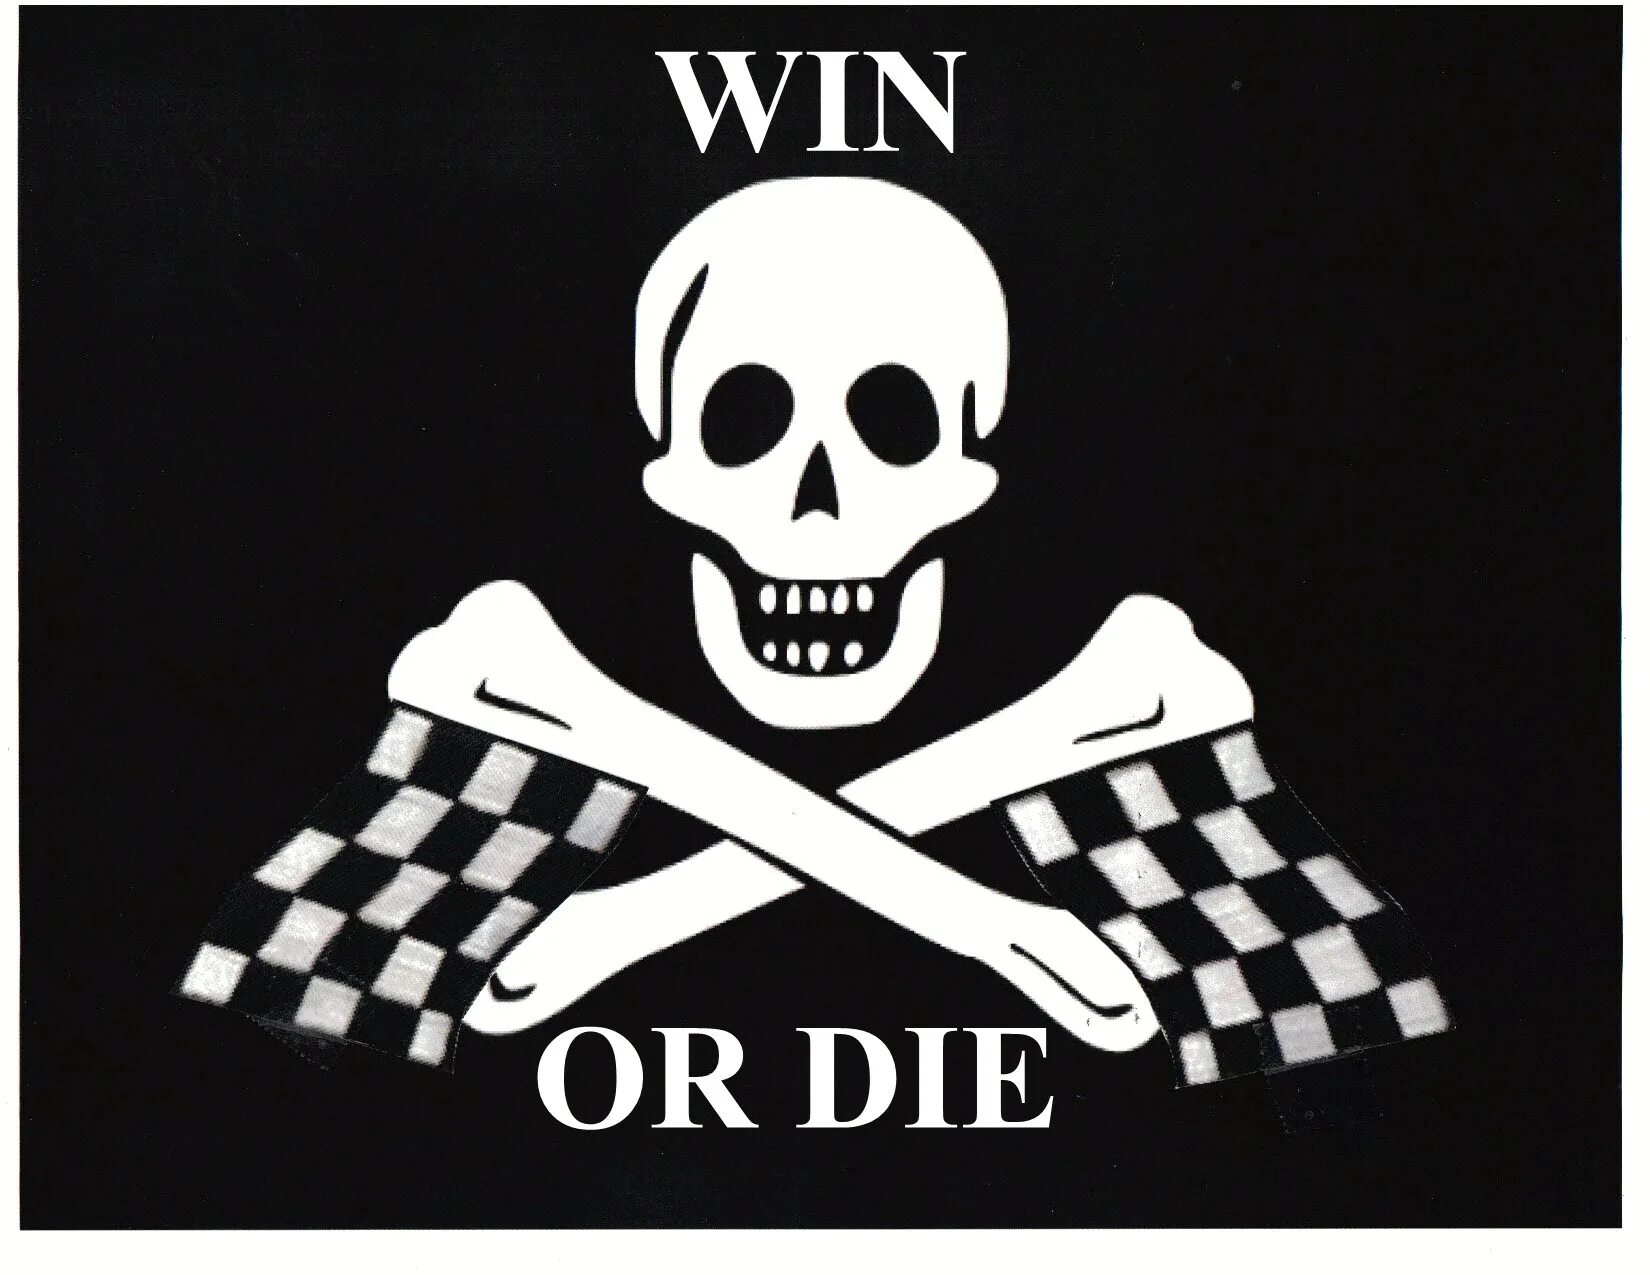 Https click or die ru. Win or die обои. Спартса win or die. Life or die. Win or die картинки с надписями.